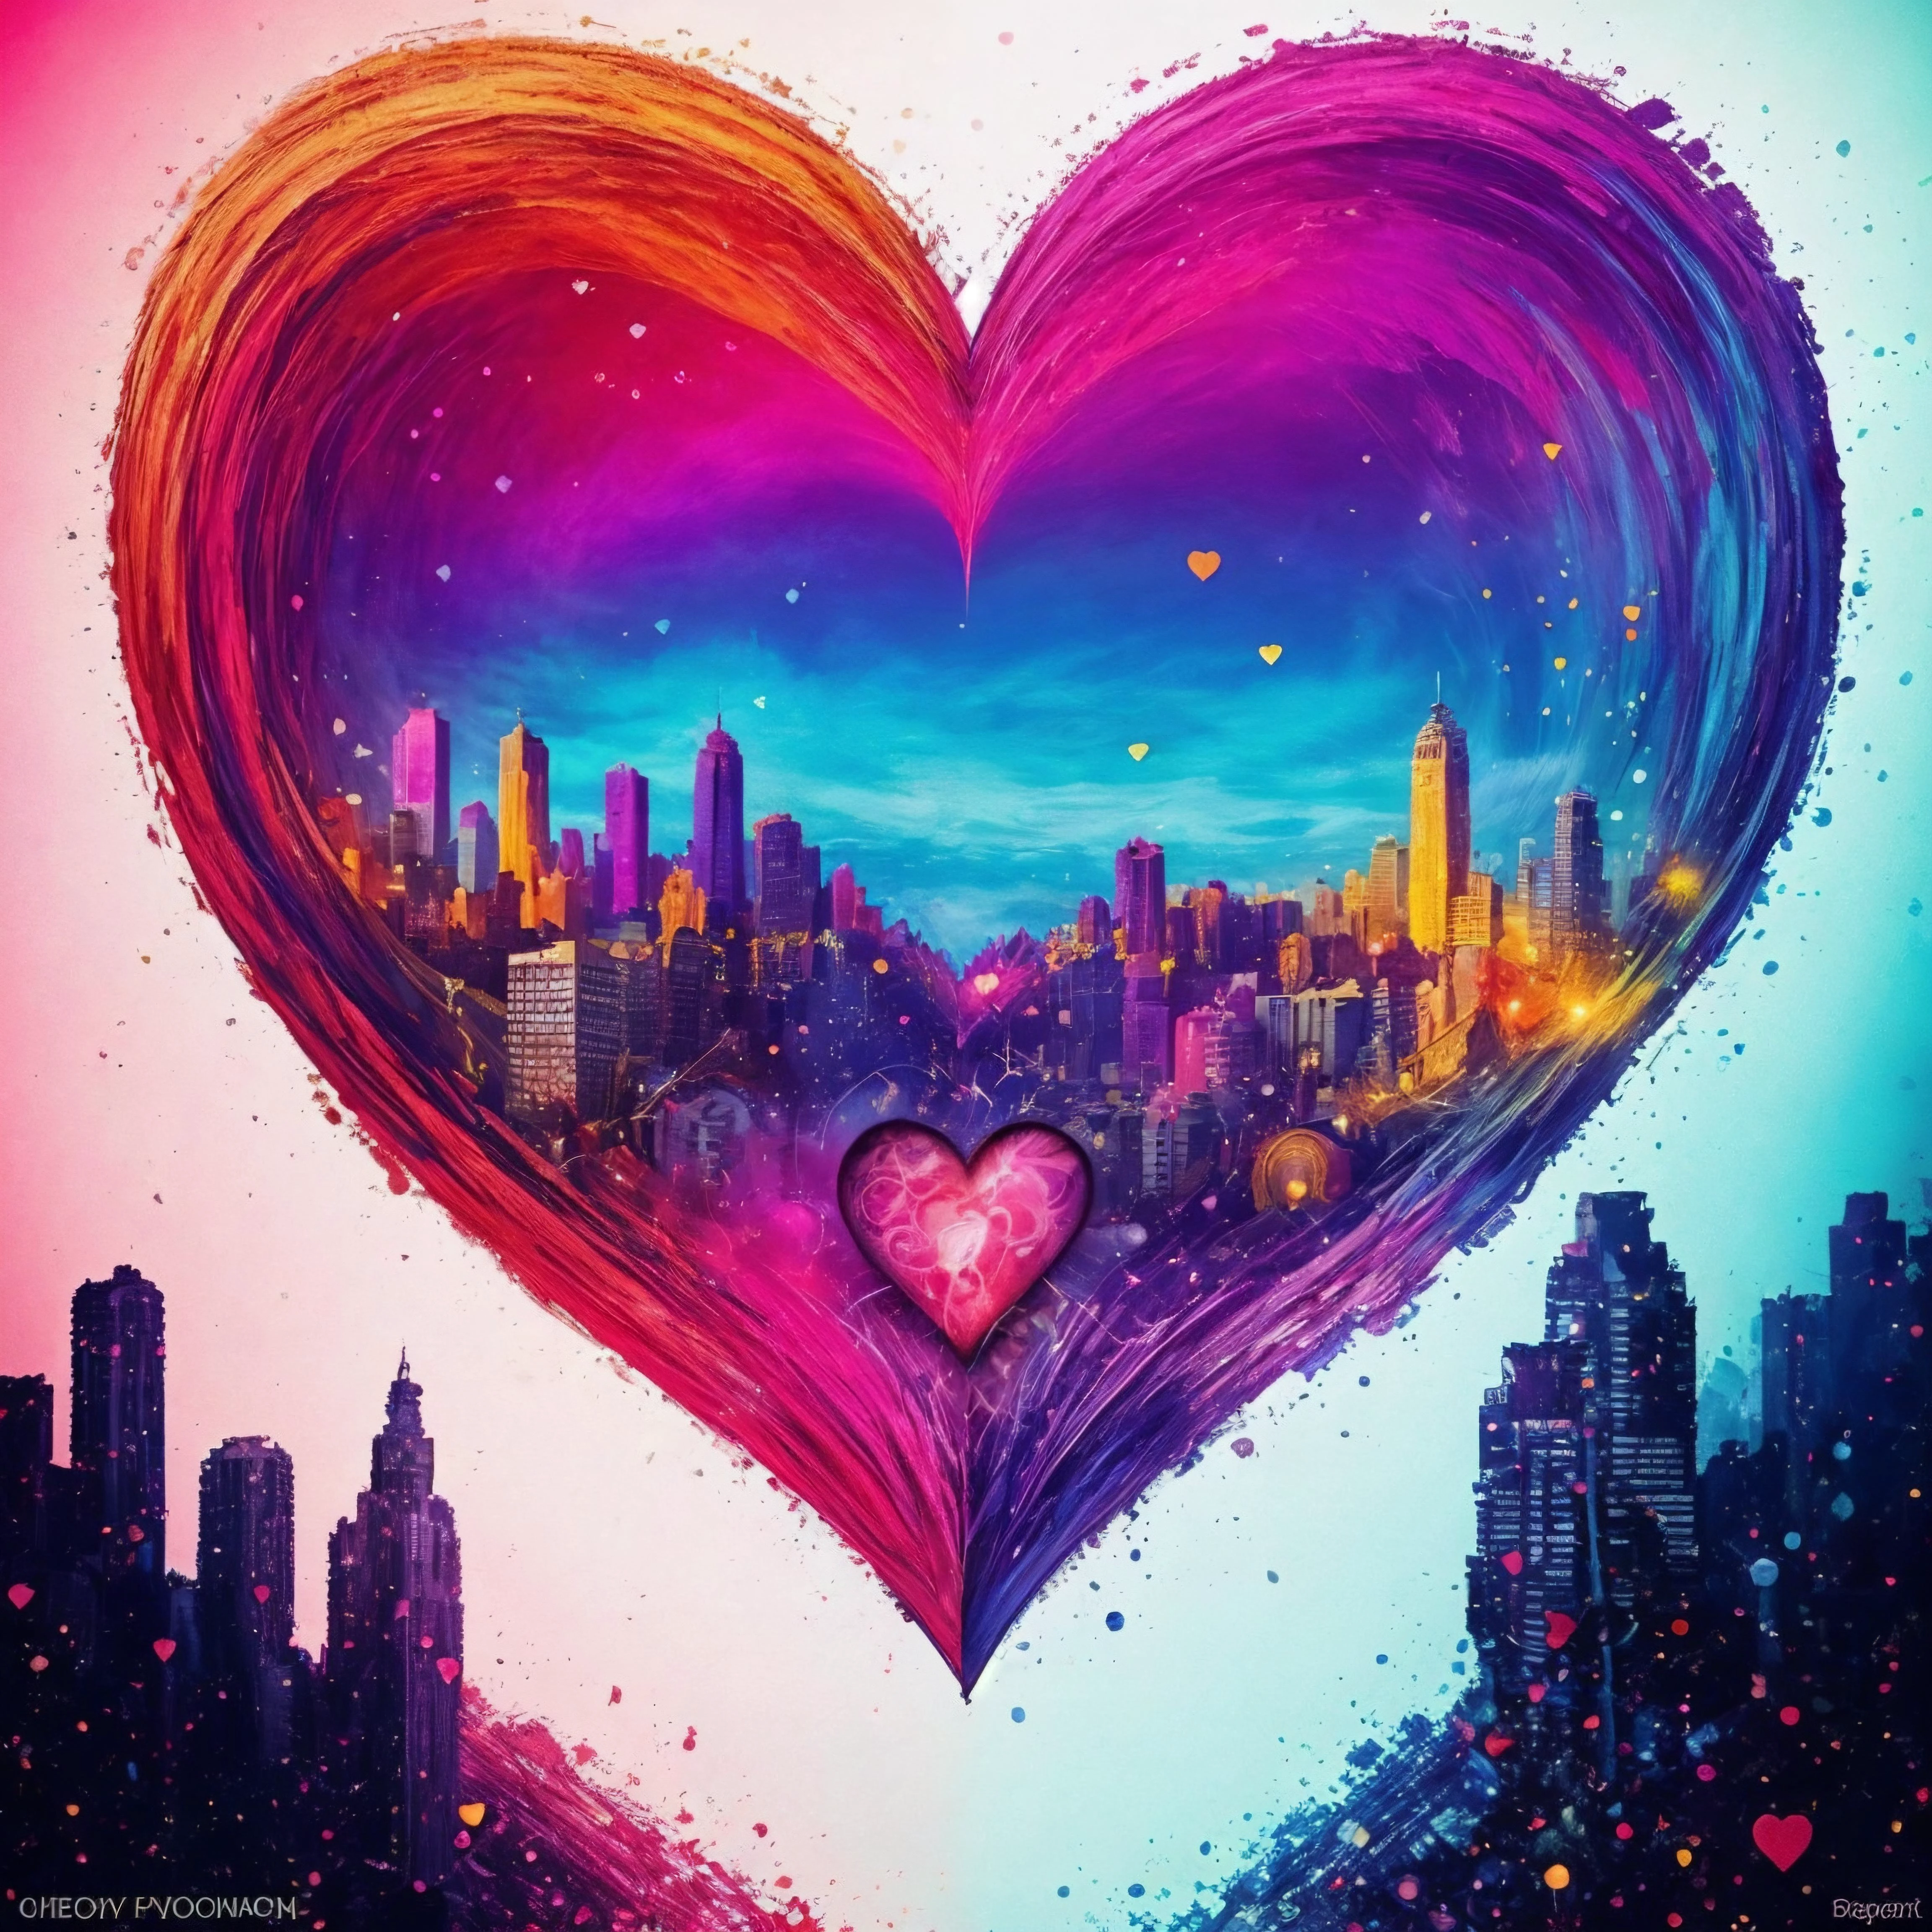 หัวใจ, เชิงนามธรรม, สีที่เข้มข้น, city of หัวใจs 